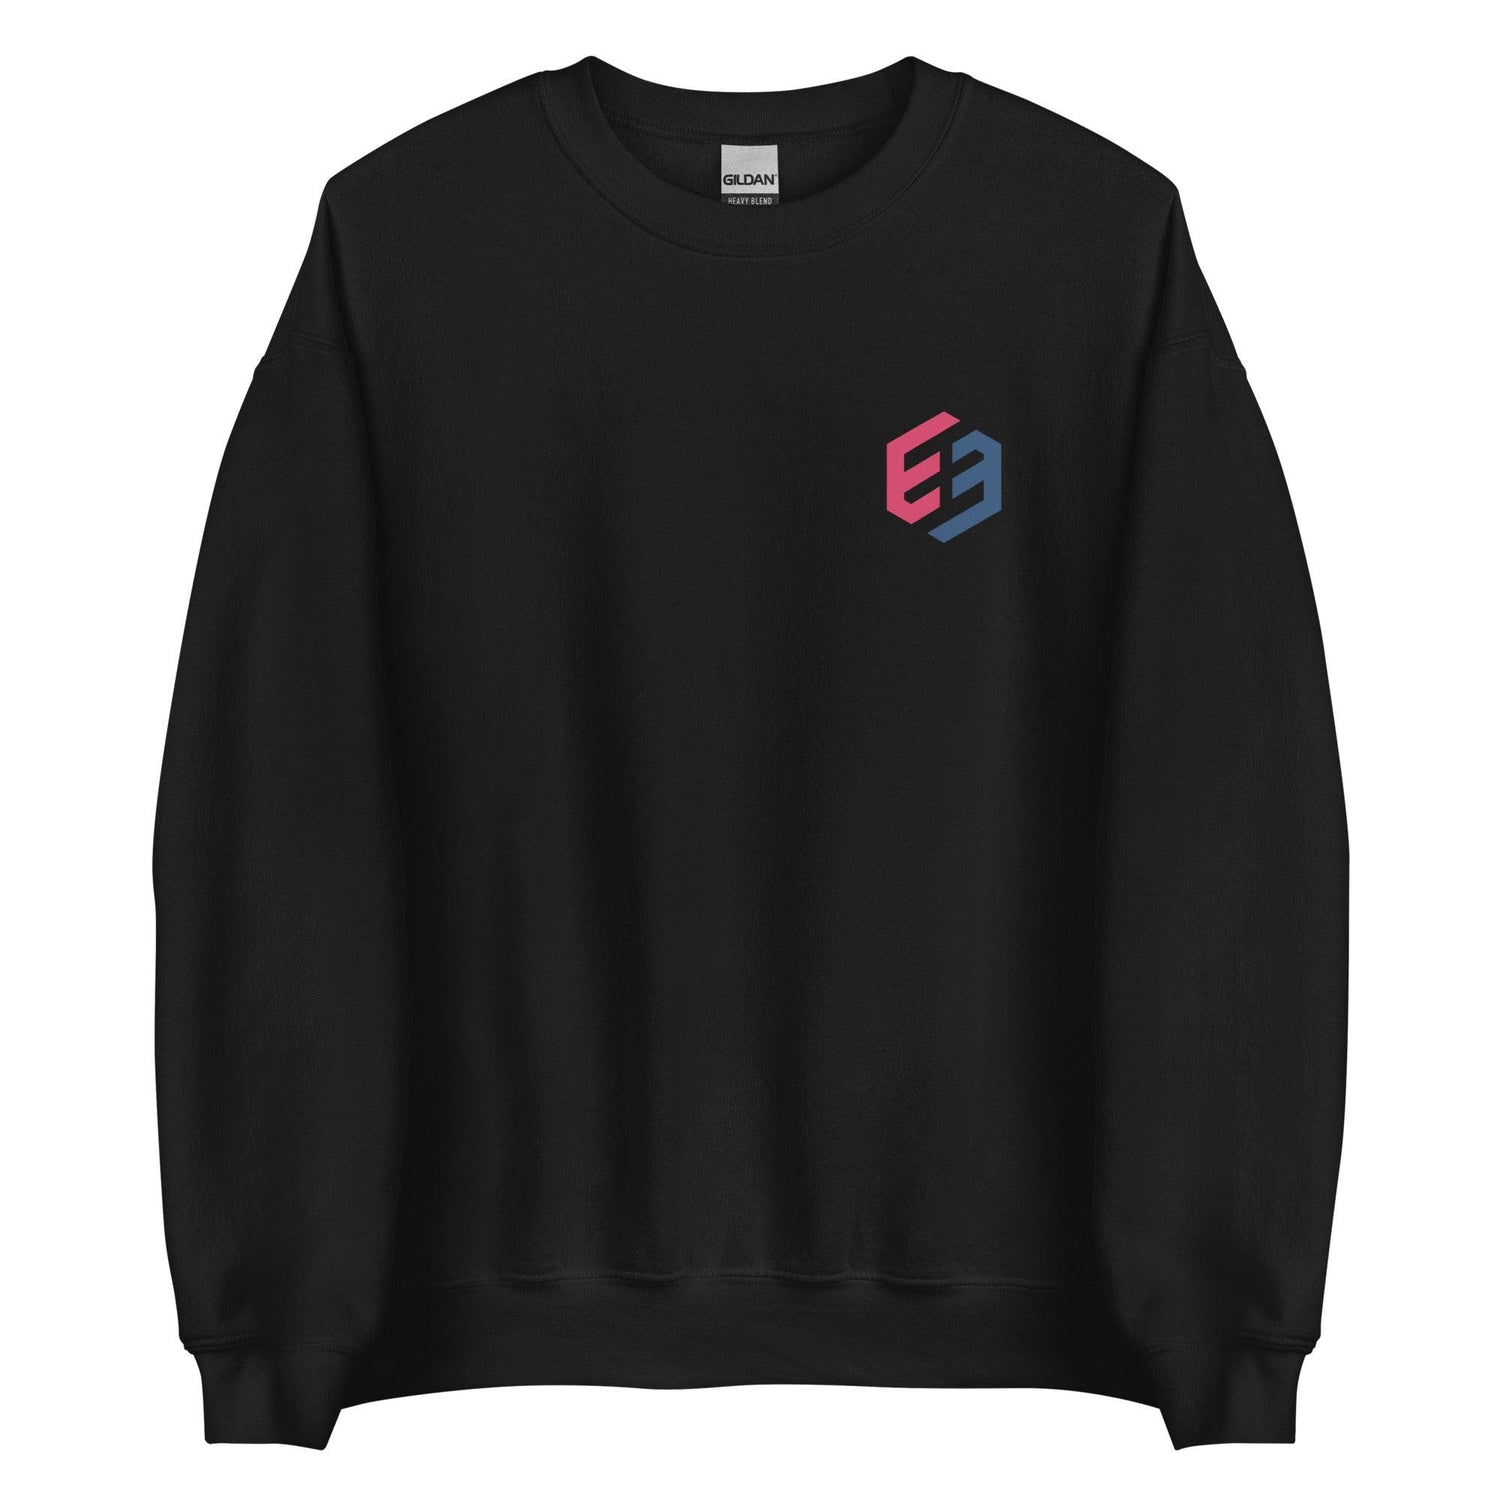 Eduardo Beltre "Essential" Sweatshirt - Fan Arch